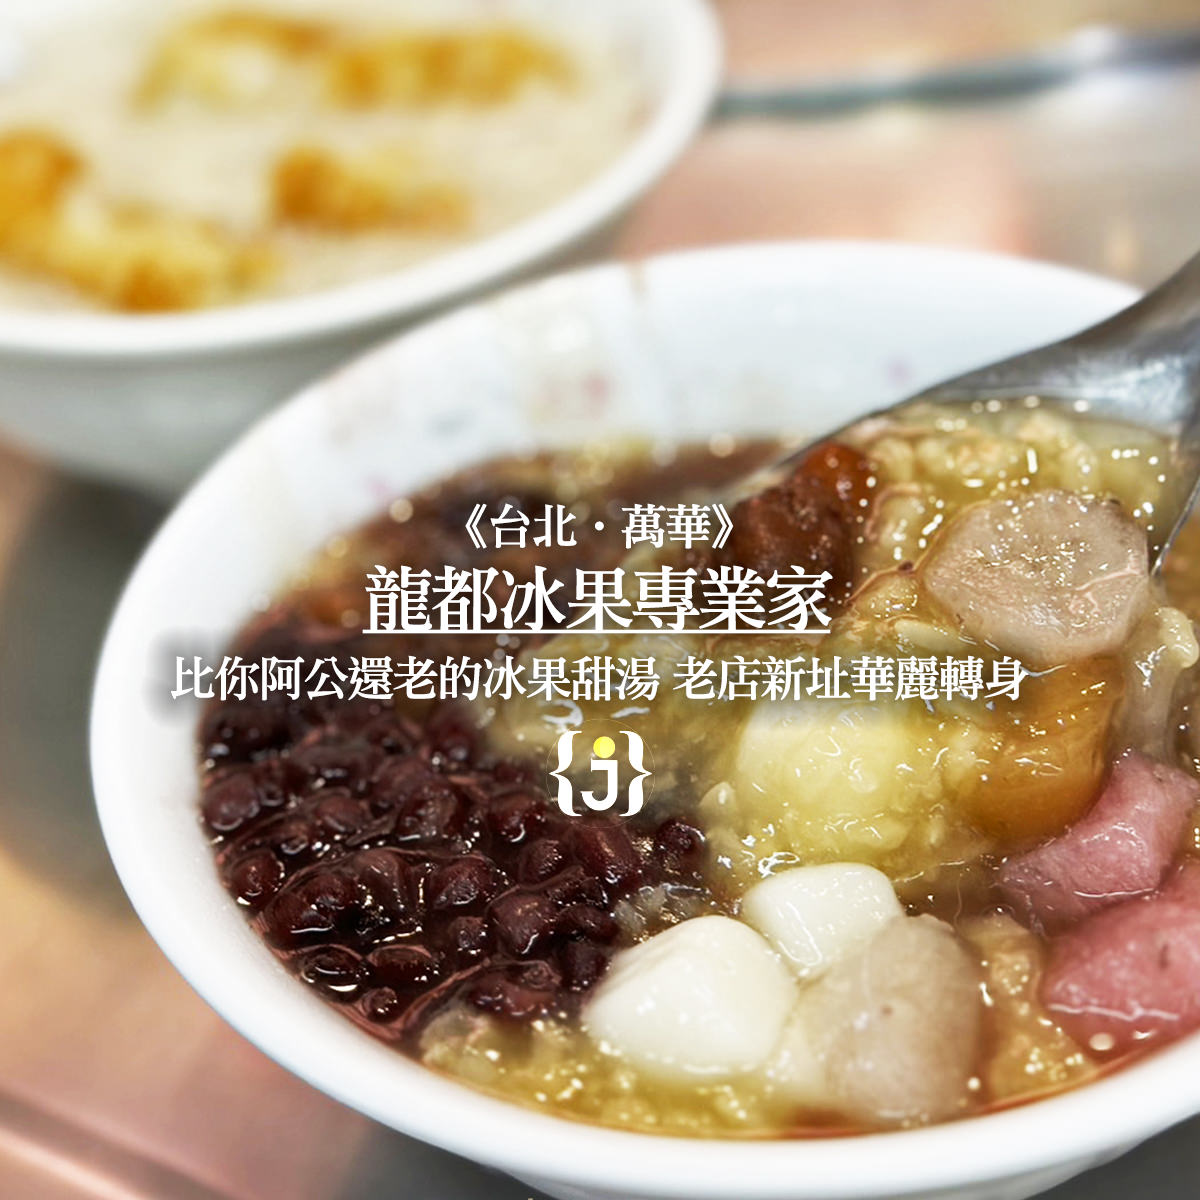 《台北‧萬華》龍都冰果專業家 比你阿公還老的冰果甜湯 老店新址華麗轉身